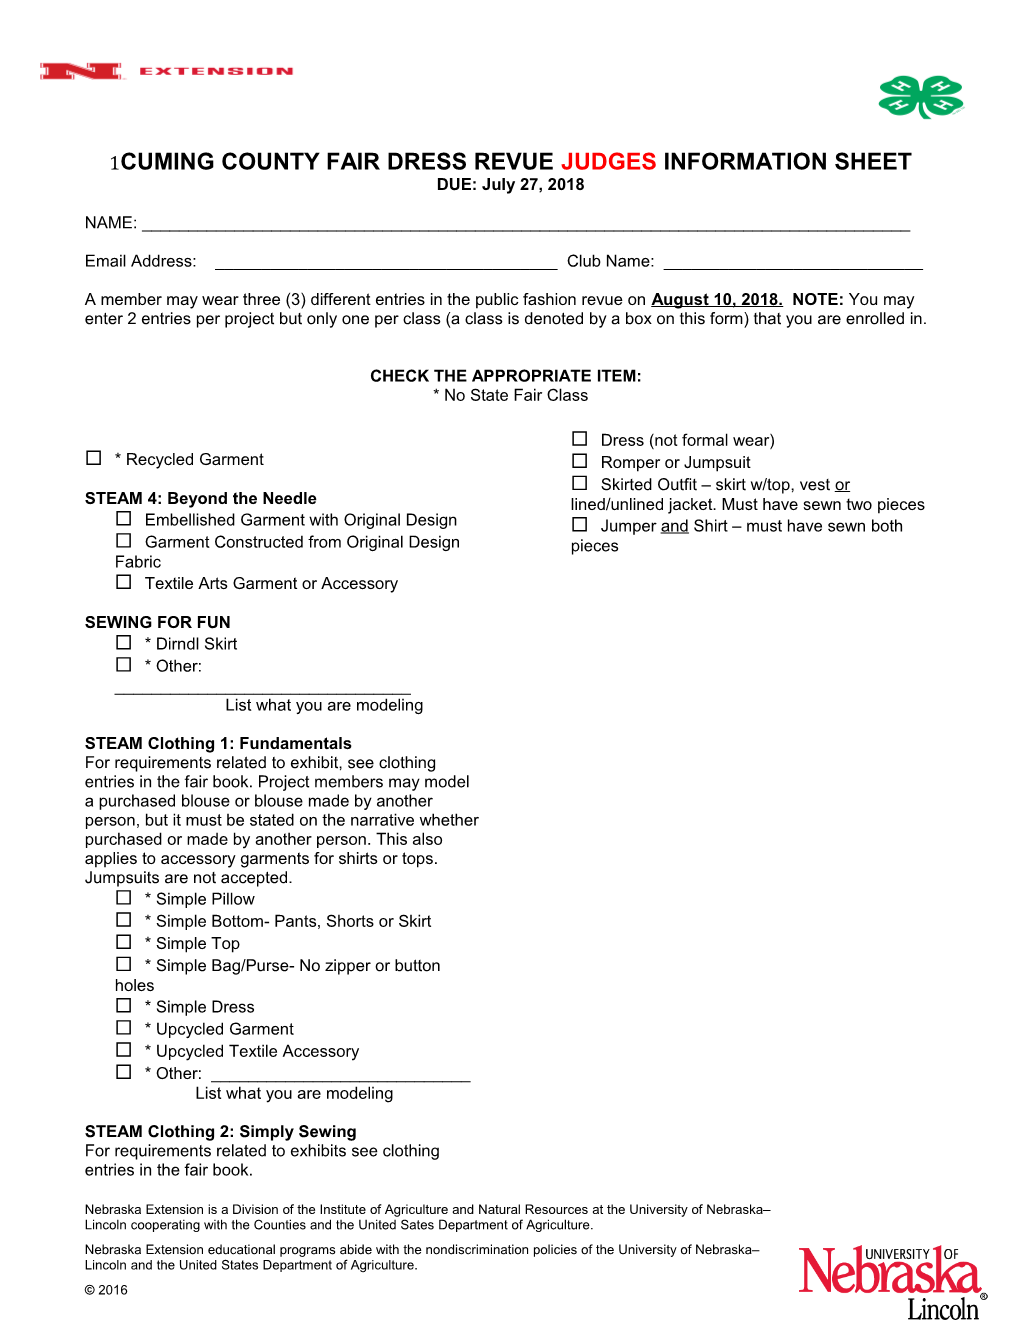 Cuming County Fair Dress Revue Judges Information Sheet